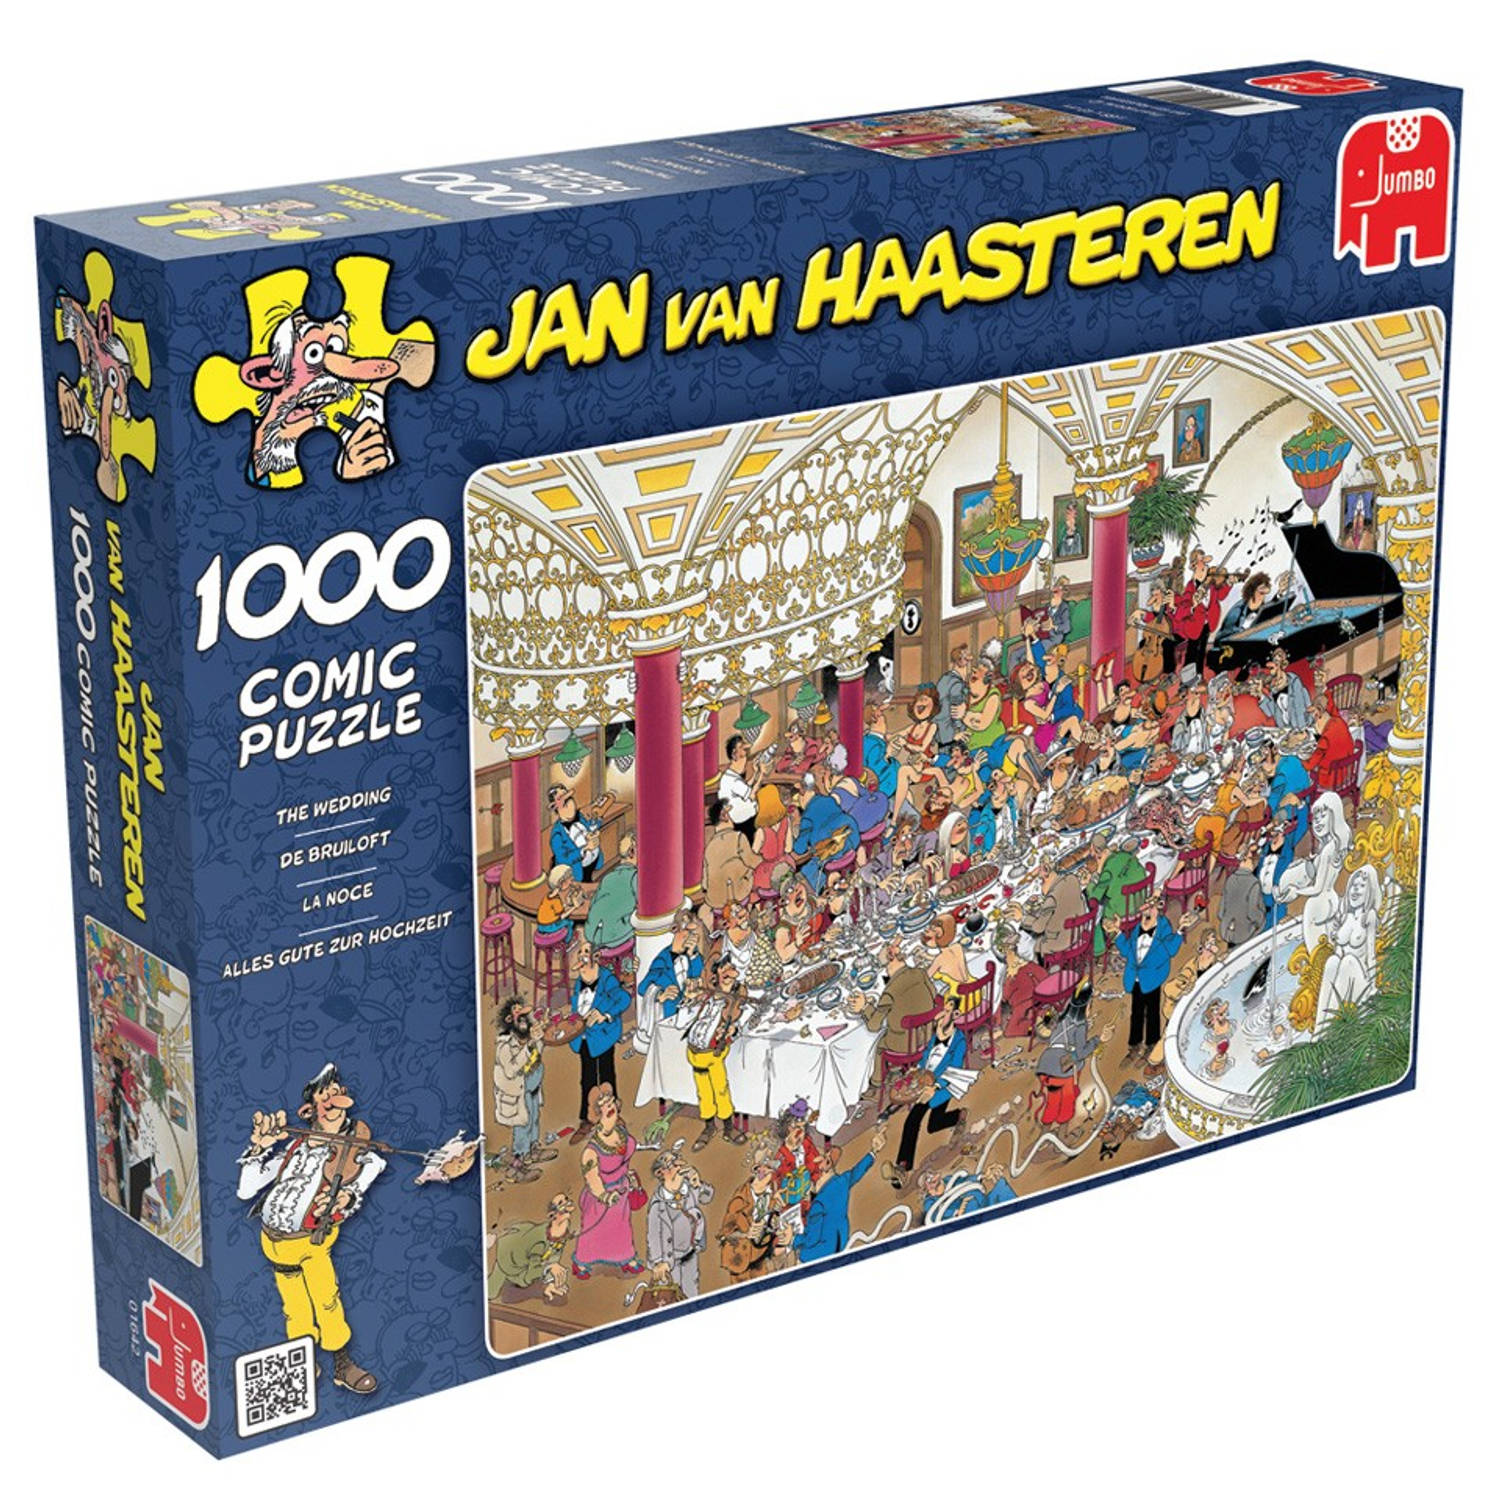 ding Proficiat Durven Jan van Haasteren puzzel de bruiloft - 1000 stukjes | Blokker